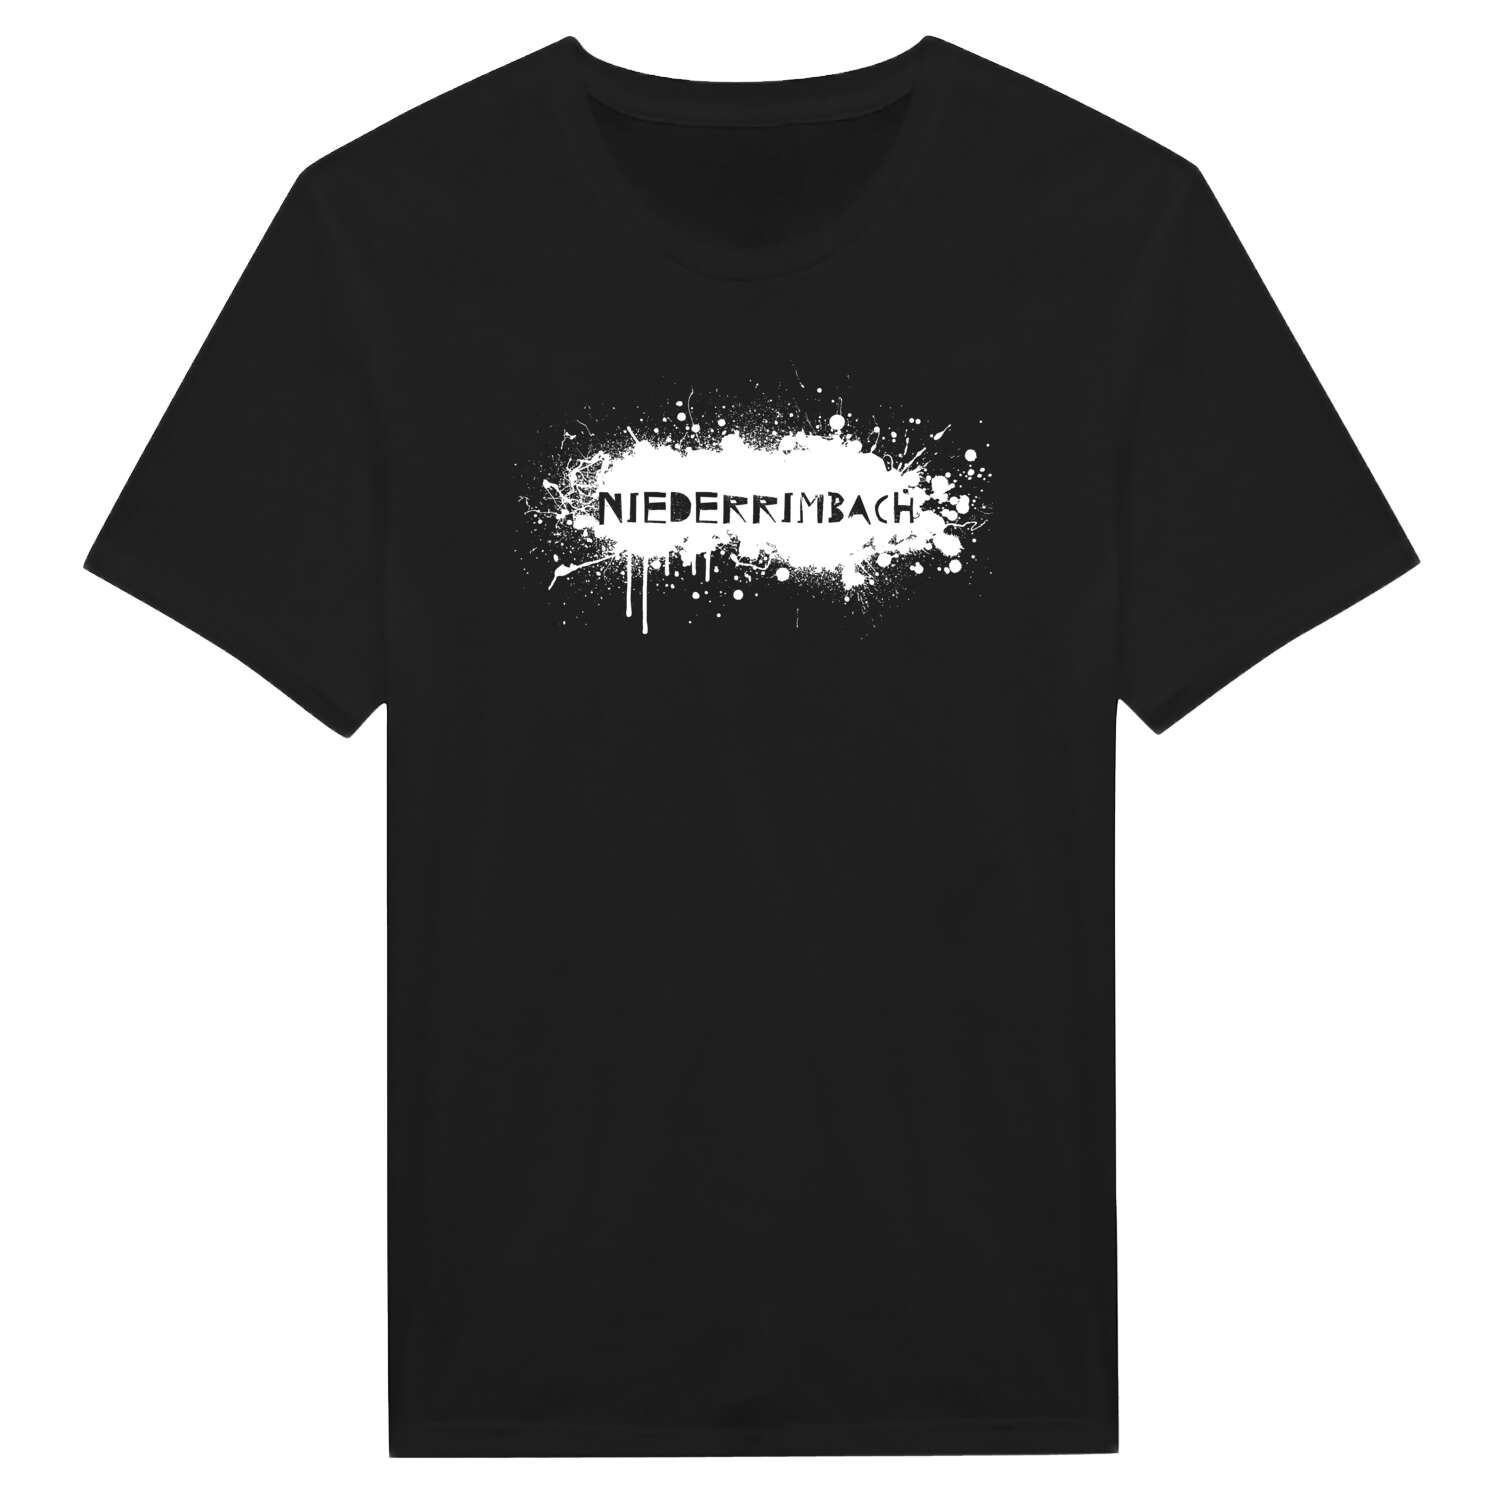 Niederrimbach T-Shirt »Paint Splash Punk«